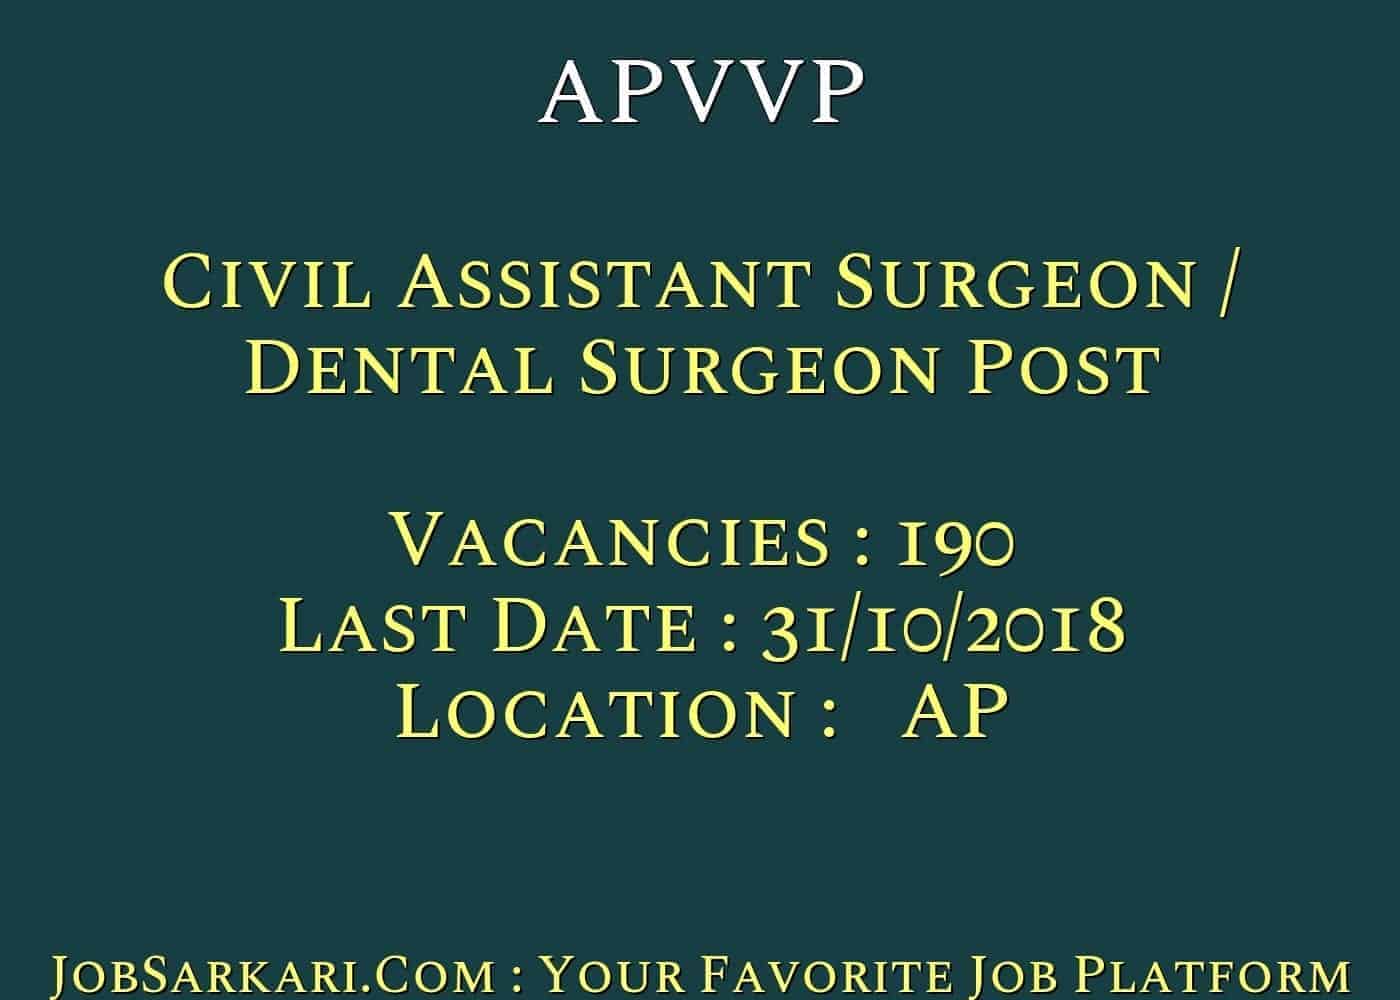 APVVP Recruitment 2018 for Civil Assistant Surgeon / Dental Surgeon Post